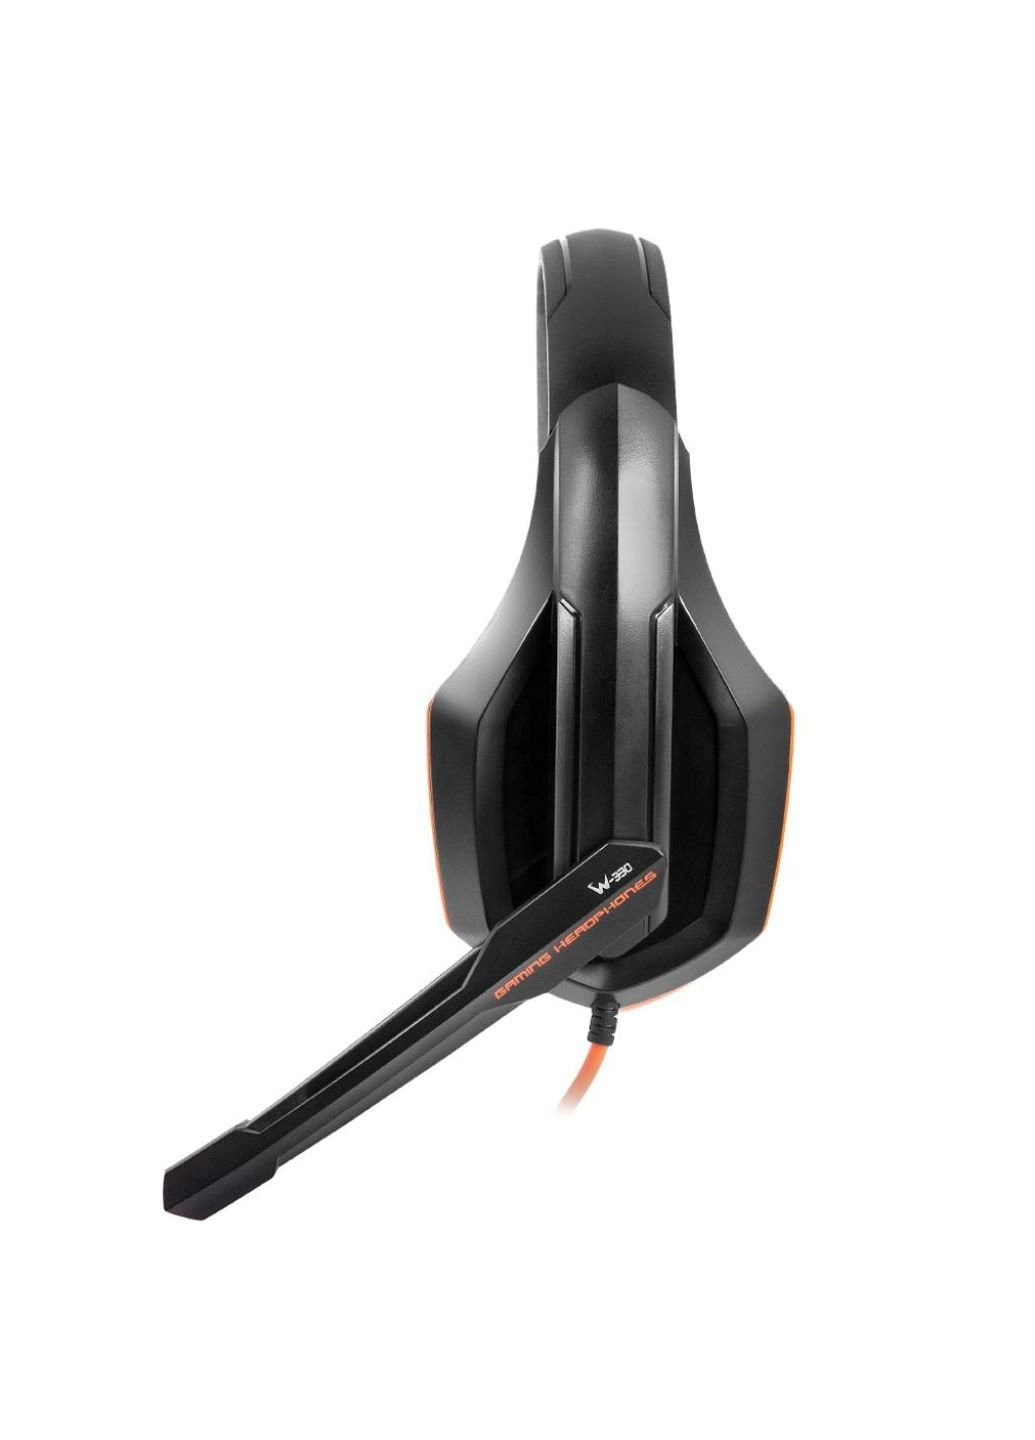 Наушники Gemix w-330 black-orange (250308159)